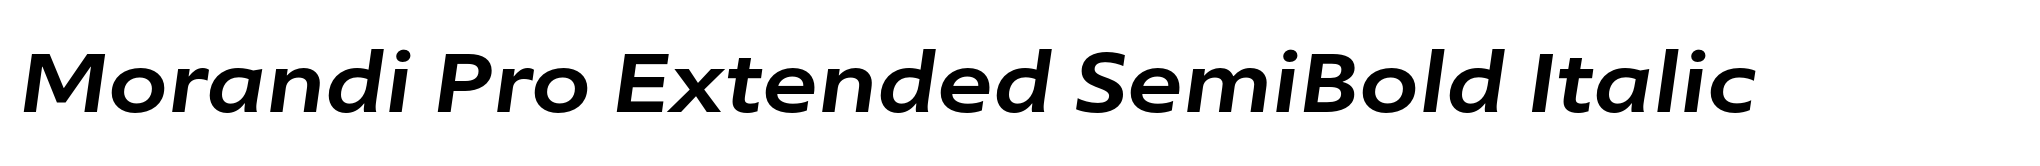 Morandi Pro Extended SemiBold Italic image